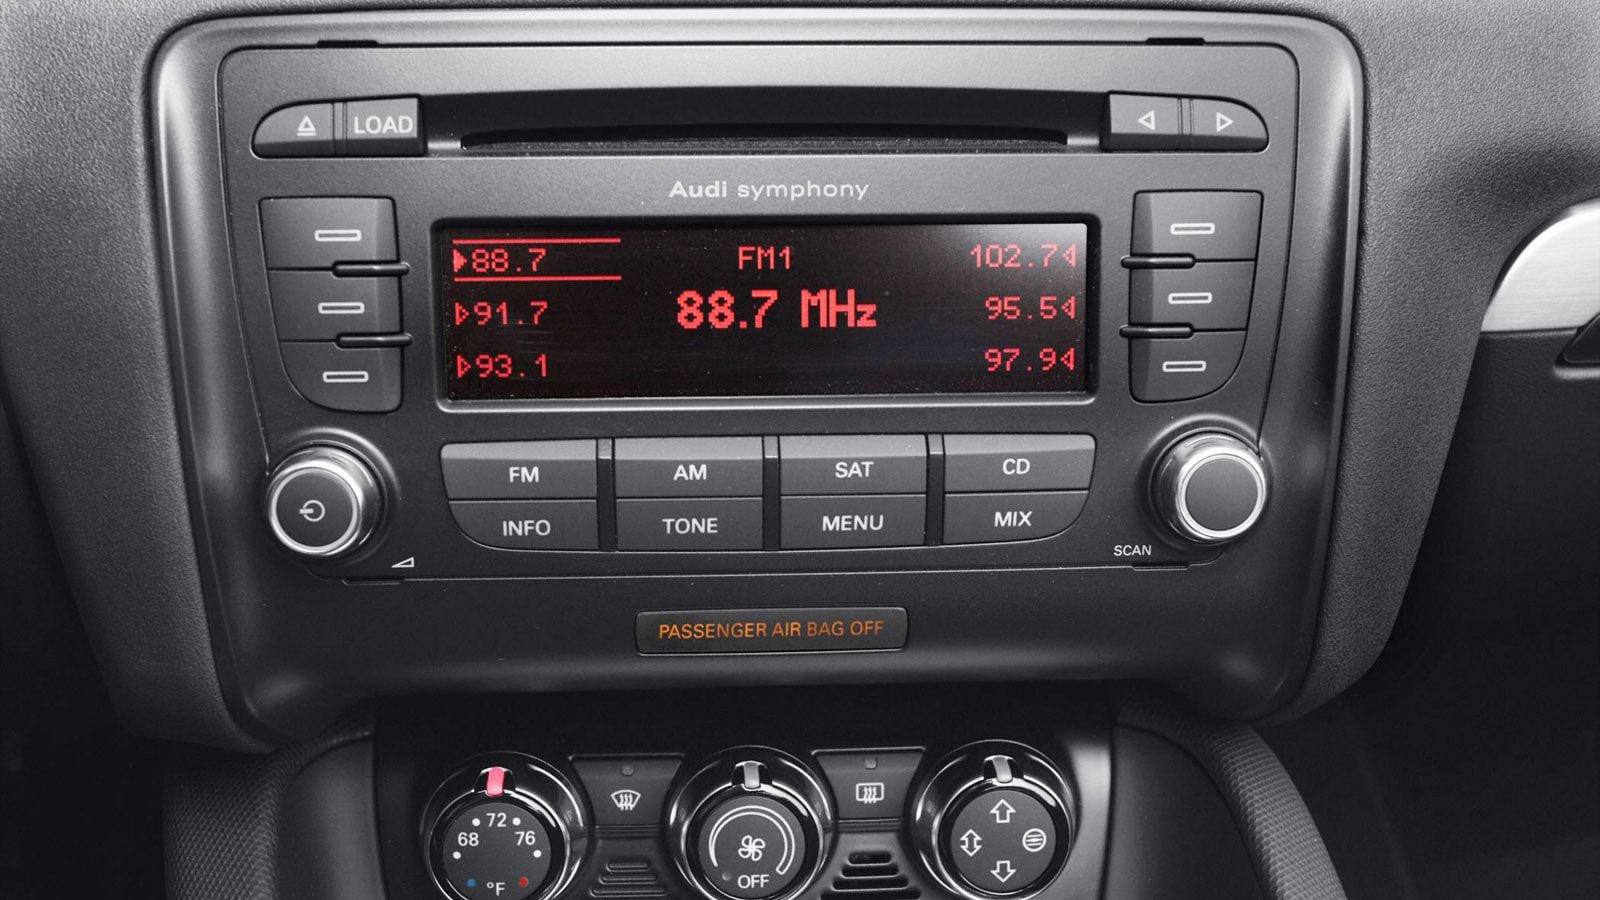 Audi A4 Stereo Radio Code A3 A5 A6 A7 A8 B6 B7 Cd Player Symphony